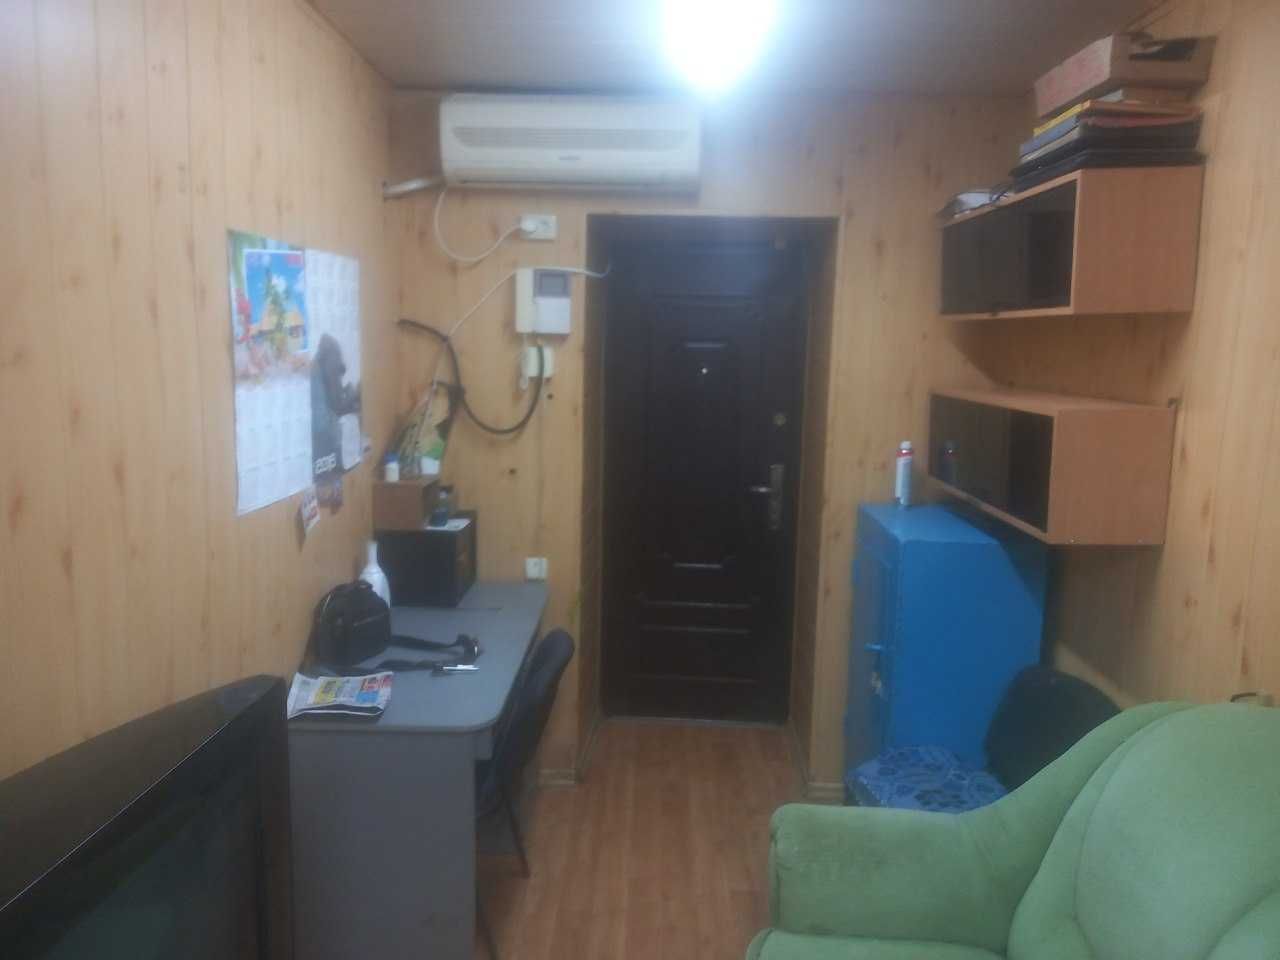 Аренда офиса по Буденного 30 кв метров под агенство.услуги